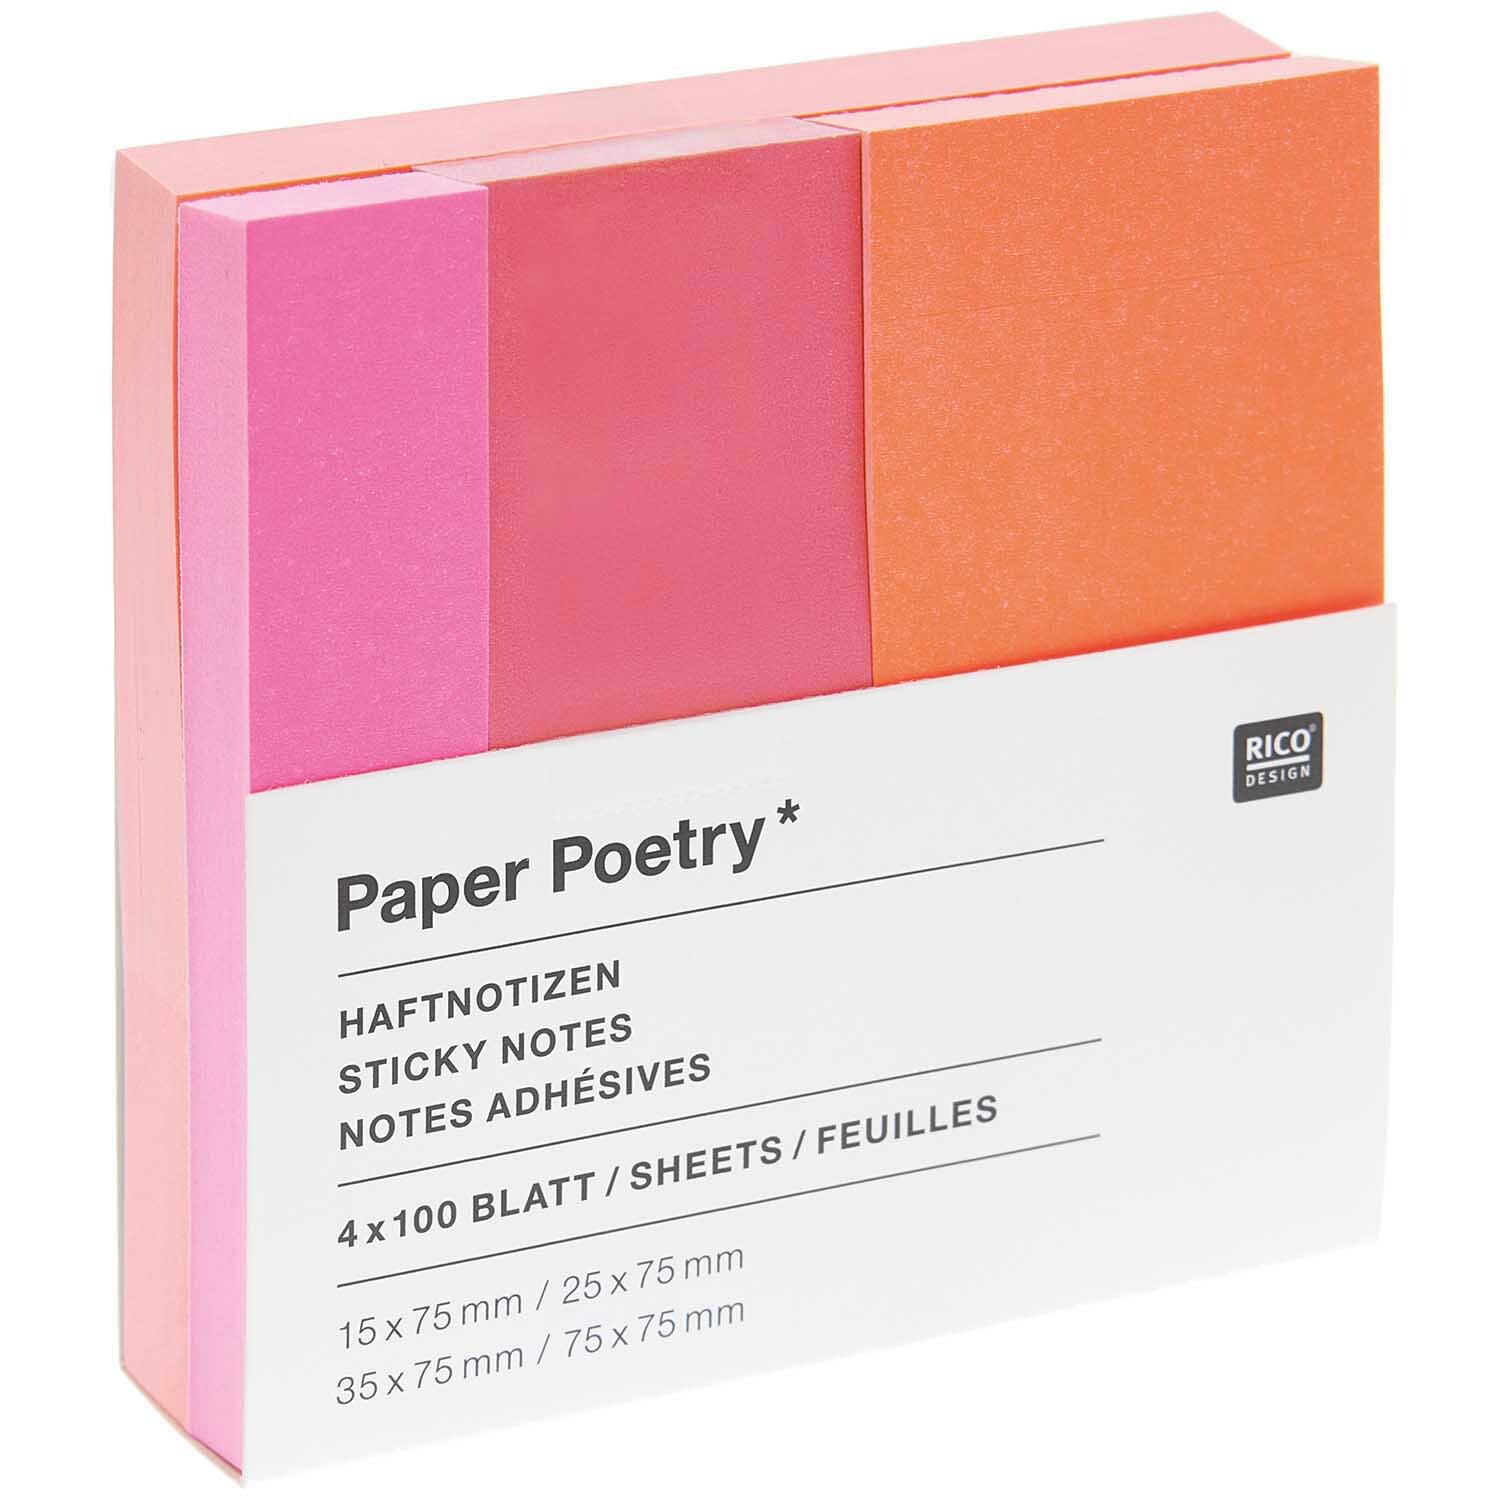 Paper Poetry Haftnotizen Neon Orange/Pink 4x100 Blatt